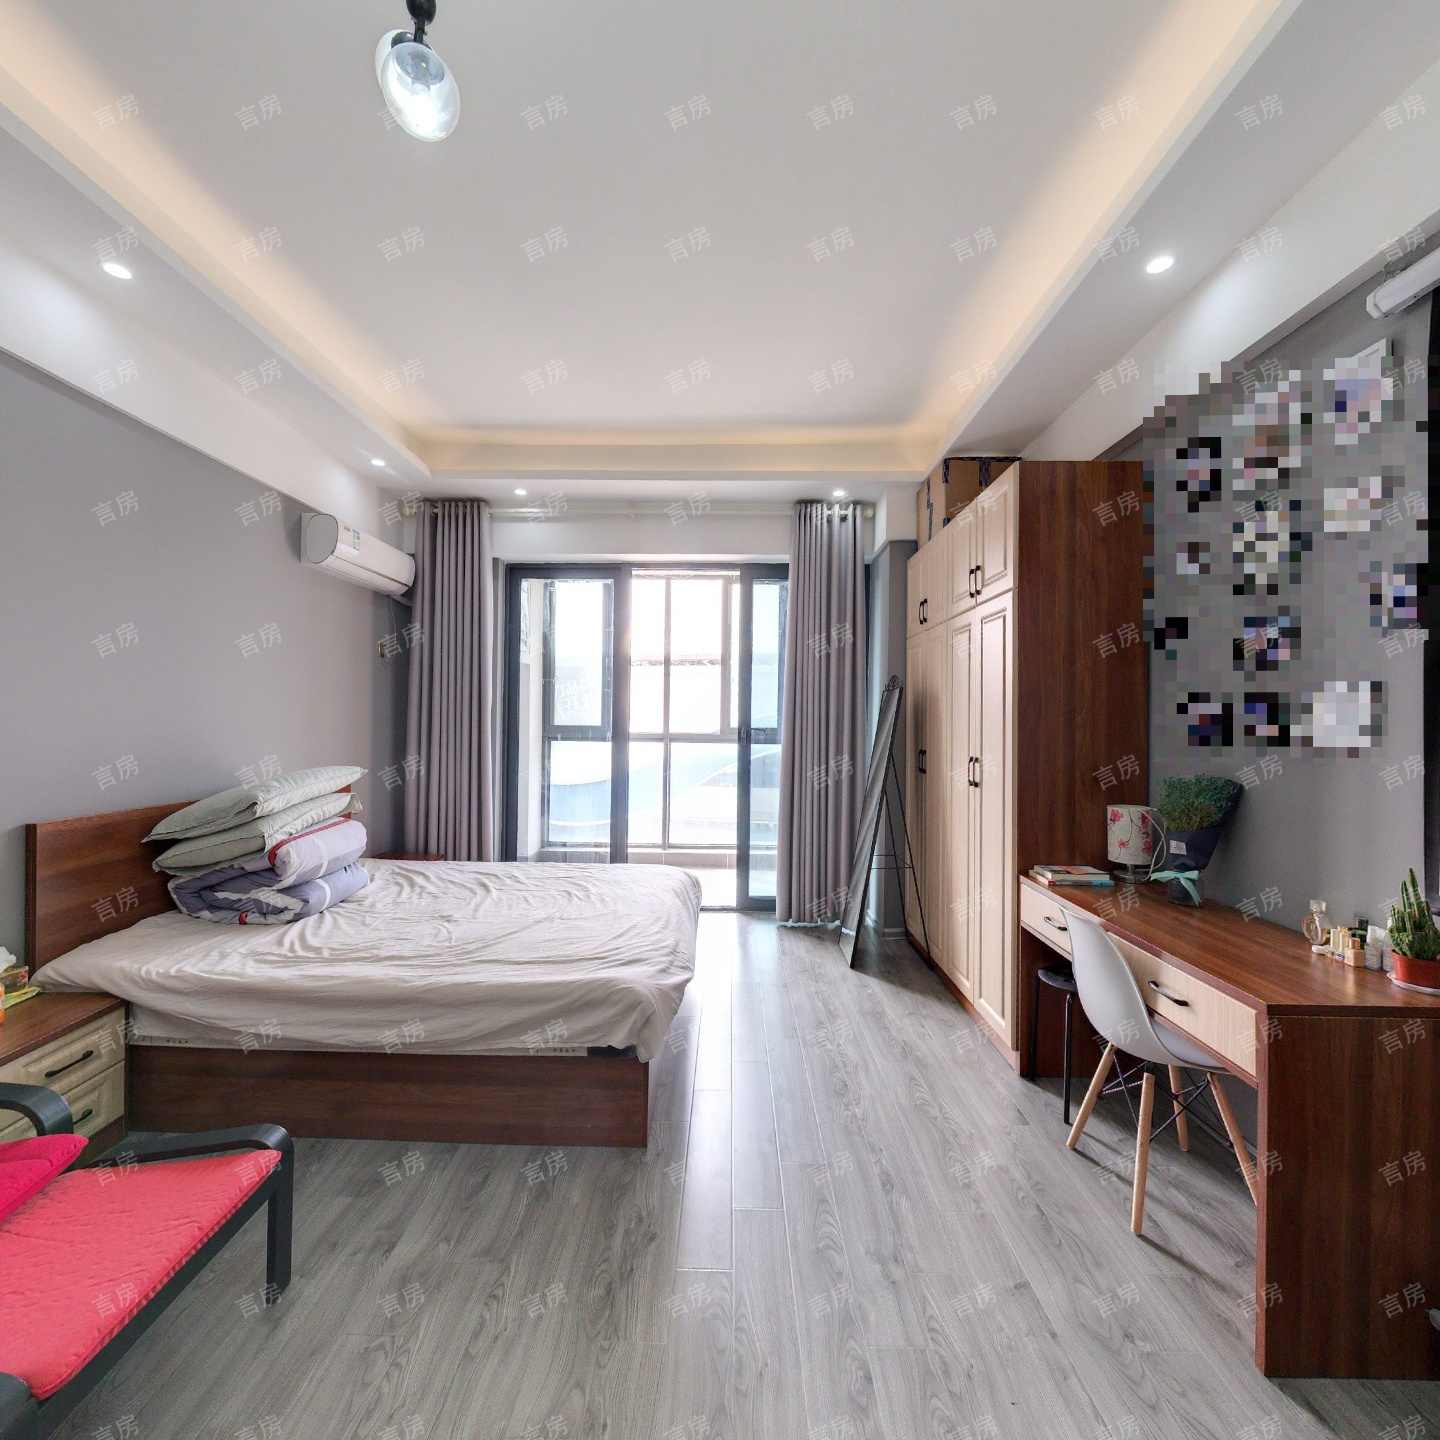 东誉城公寓 精装修 拎包入住 自住或出租都可以